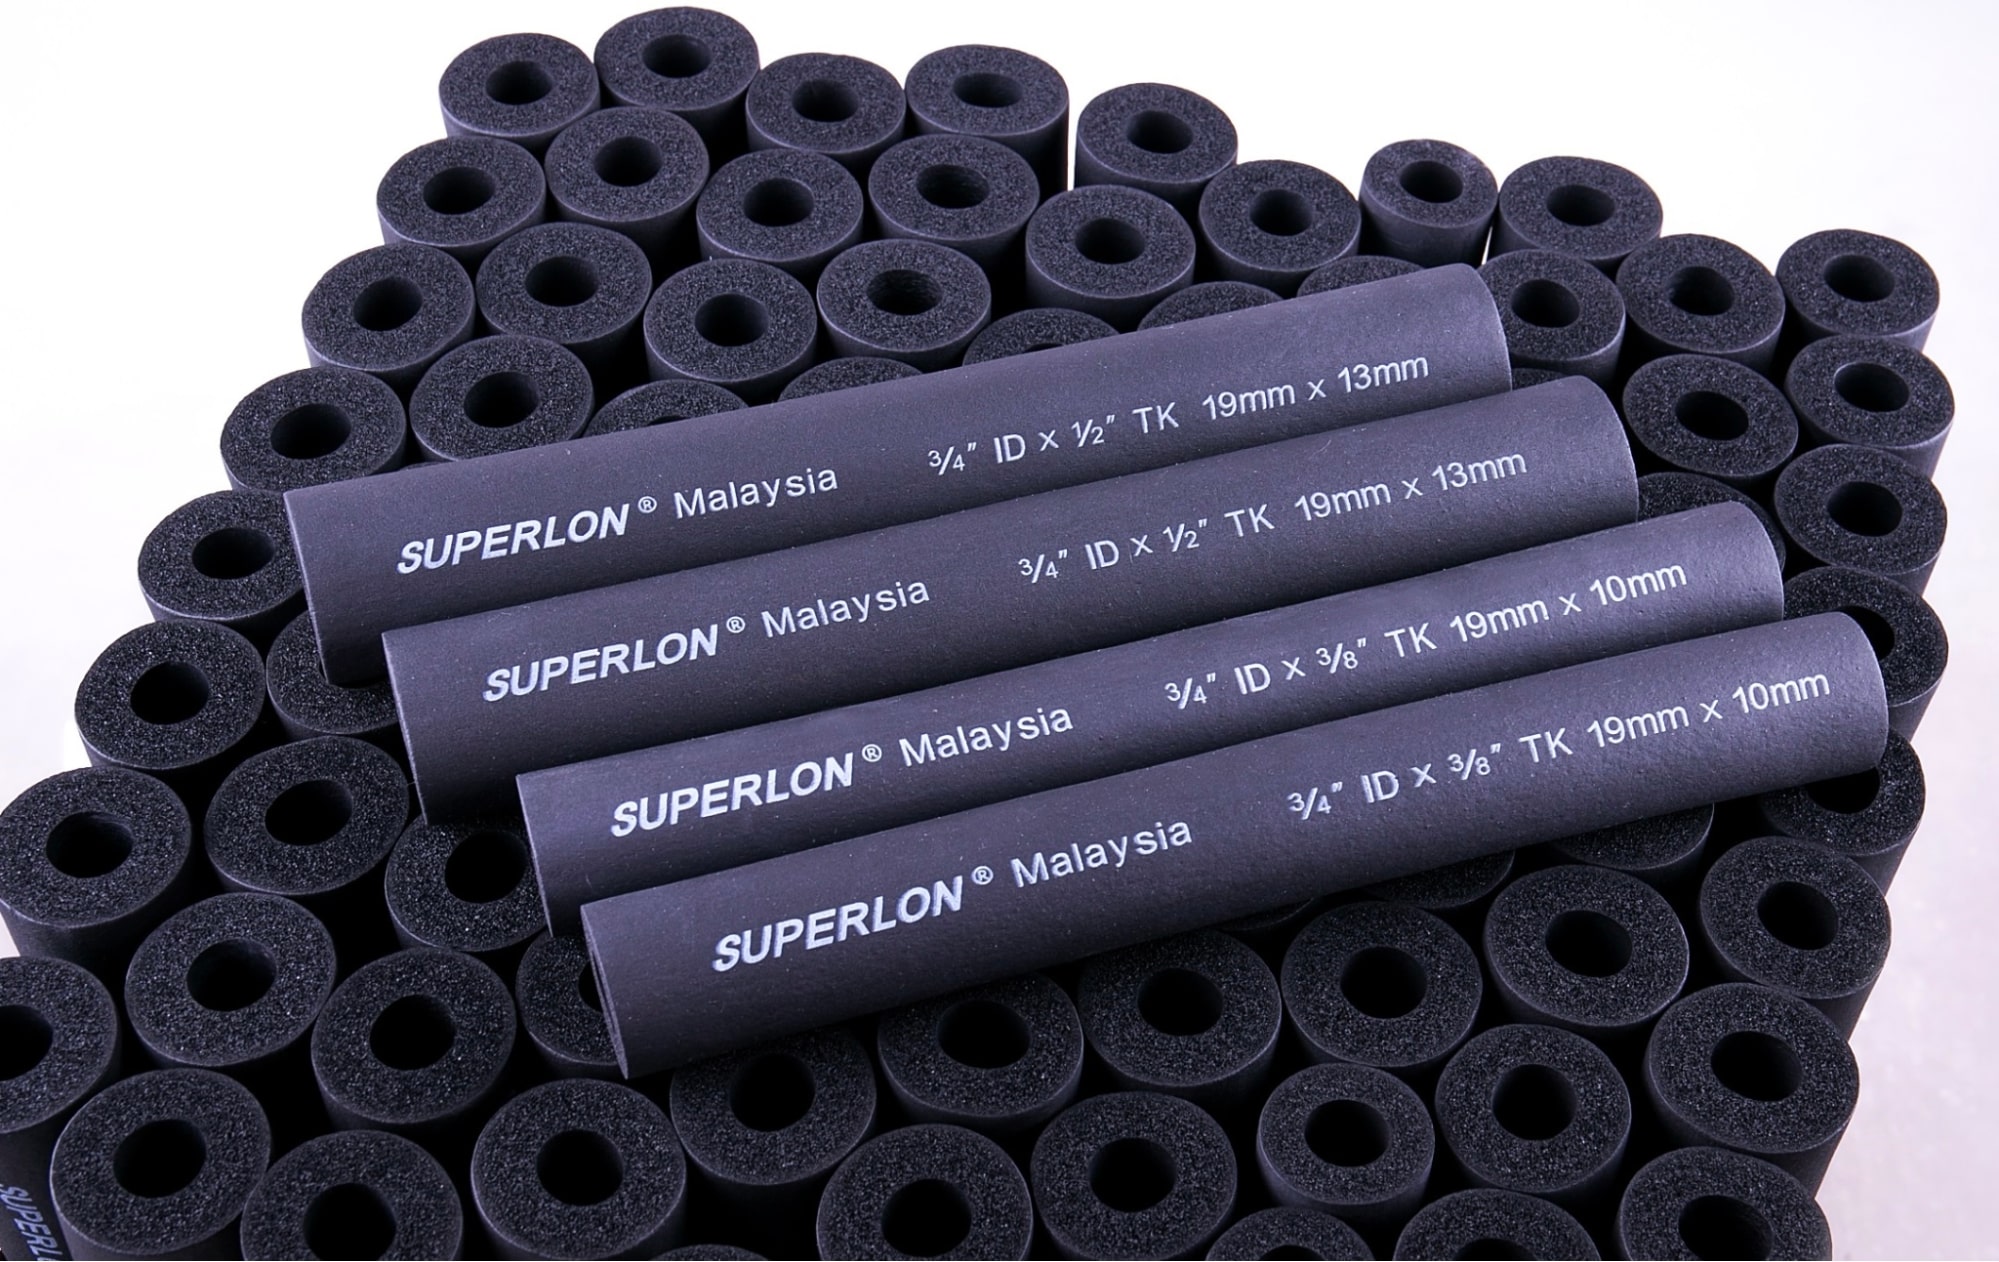 Ống Superlon có đặc tính cấu trúc ô kín